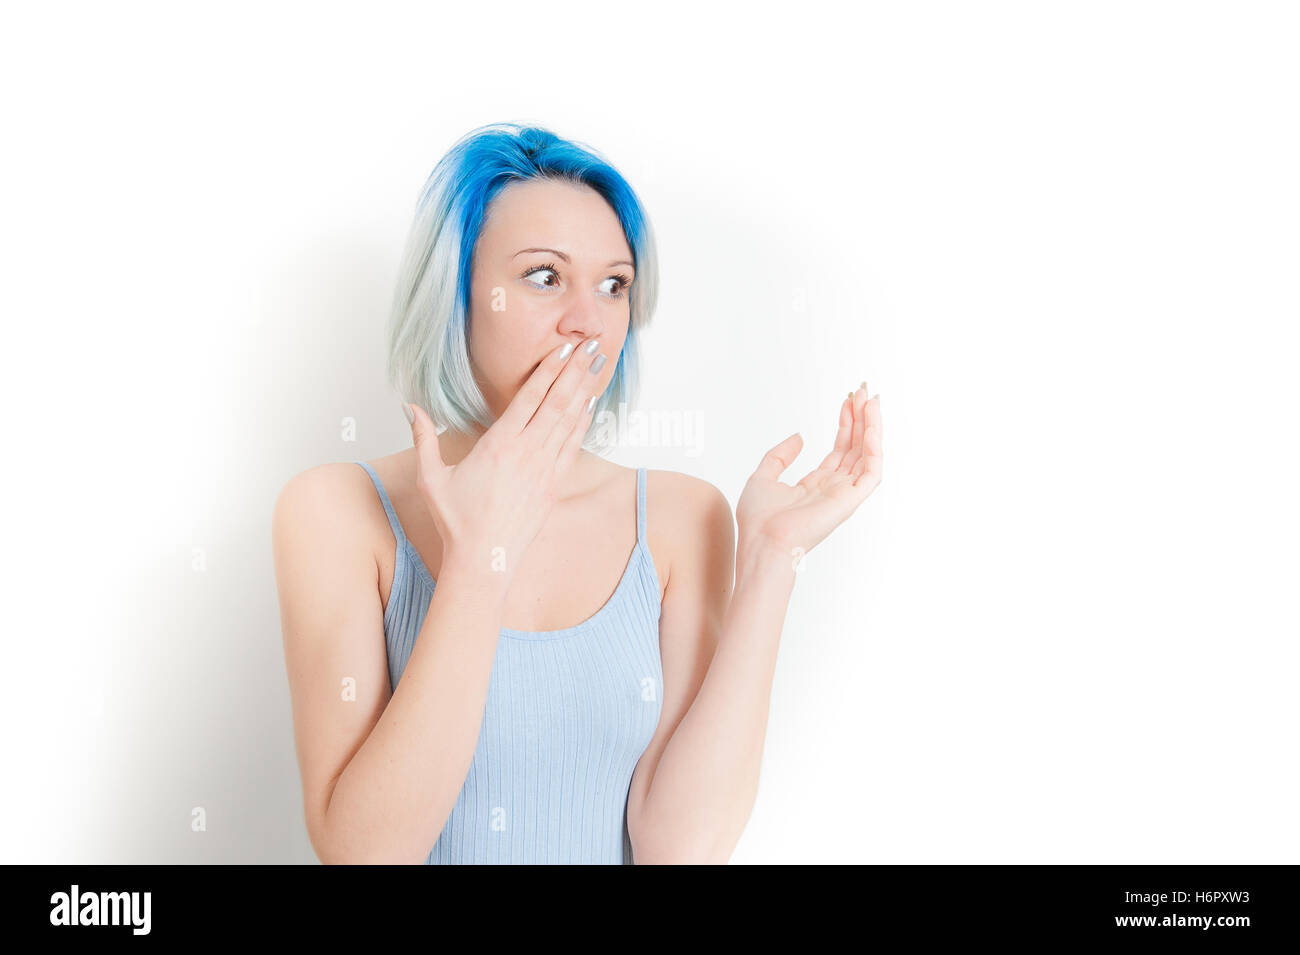 Jeune adolescente hipster woman portrait, main sur la bouche, étonné et surpris en regardant son côté gauche isolé sur fond blanc Banque D'Images